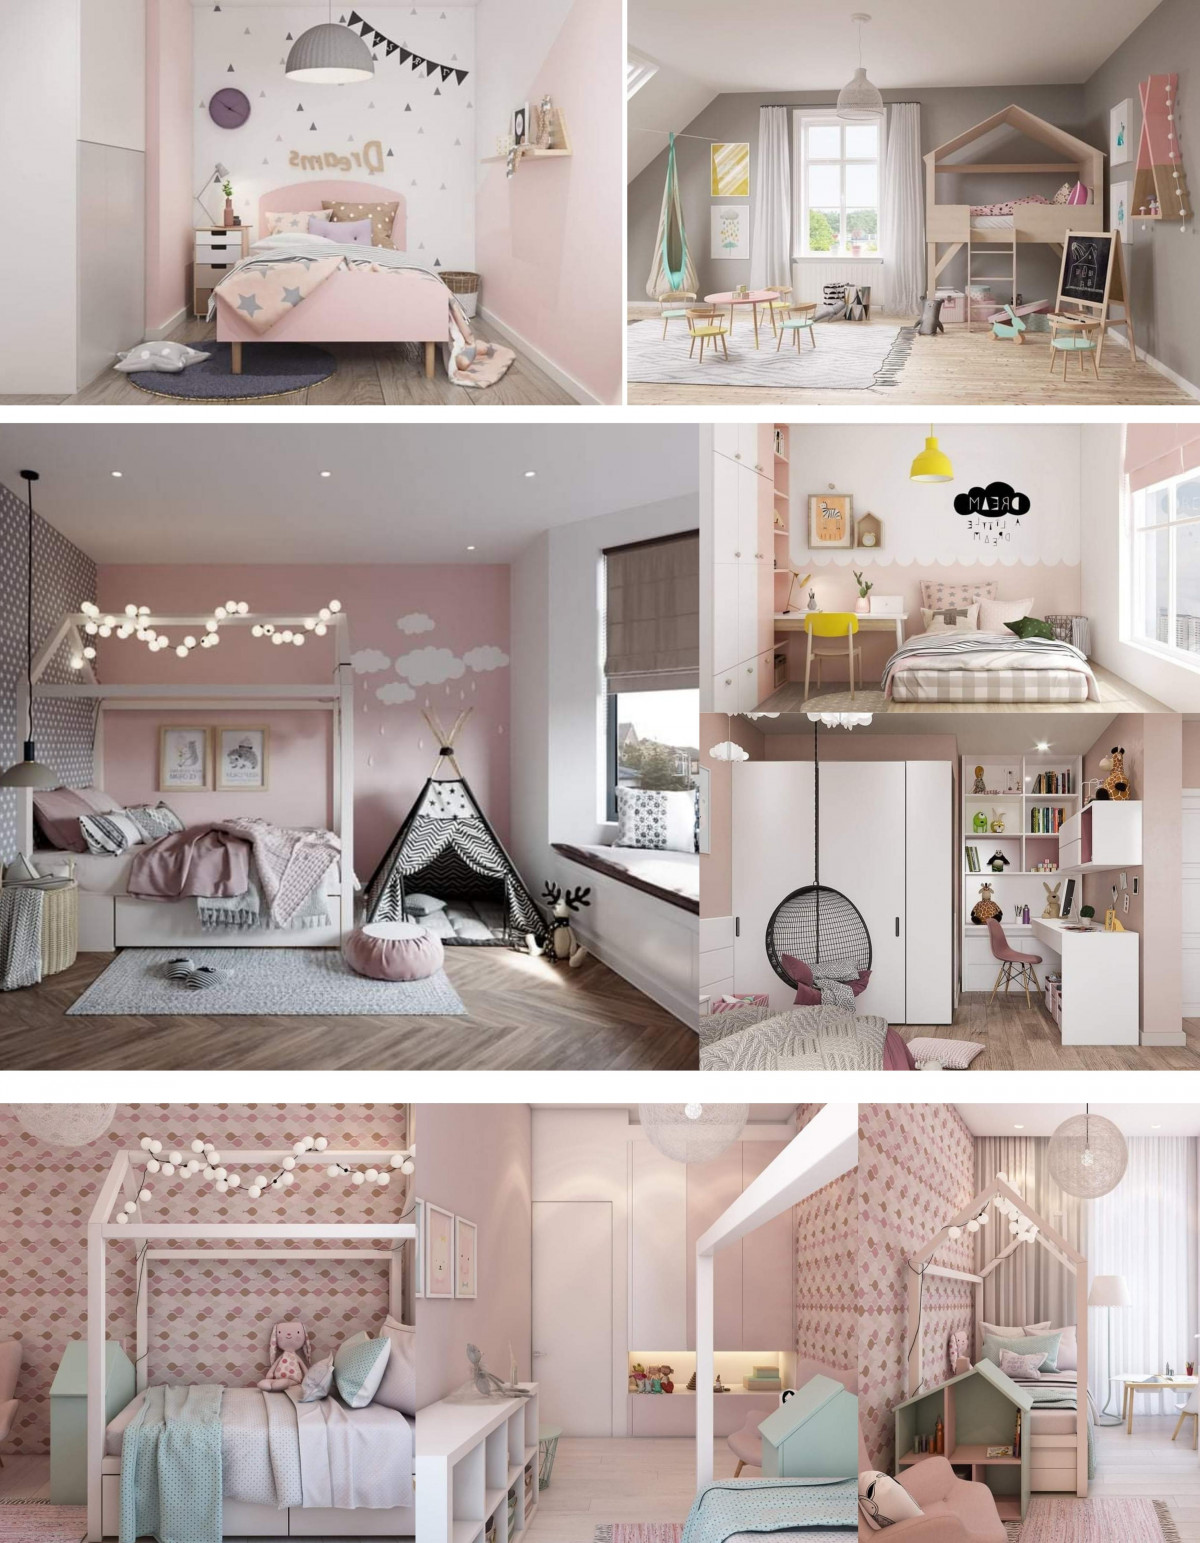 Một số mẫu thiết kế phòng ngủ dành cho các bé gái, bé trai tại căn hộ Vinhomes Grand Park